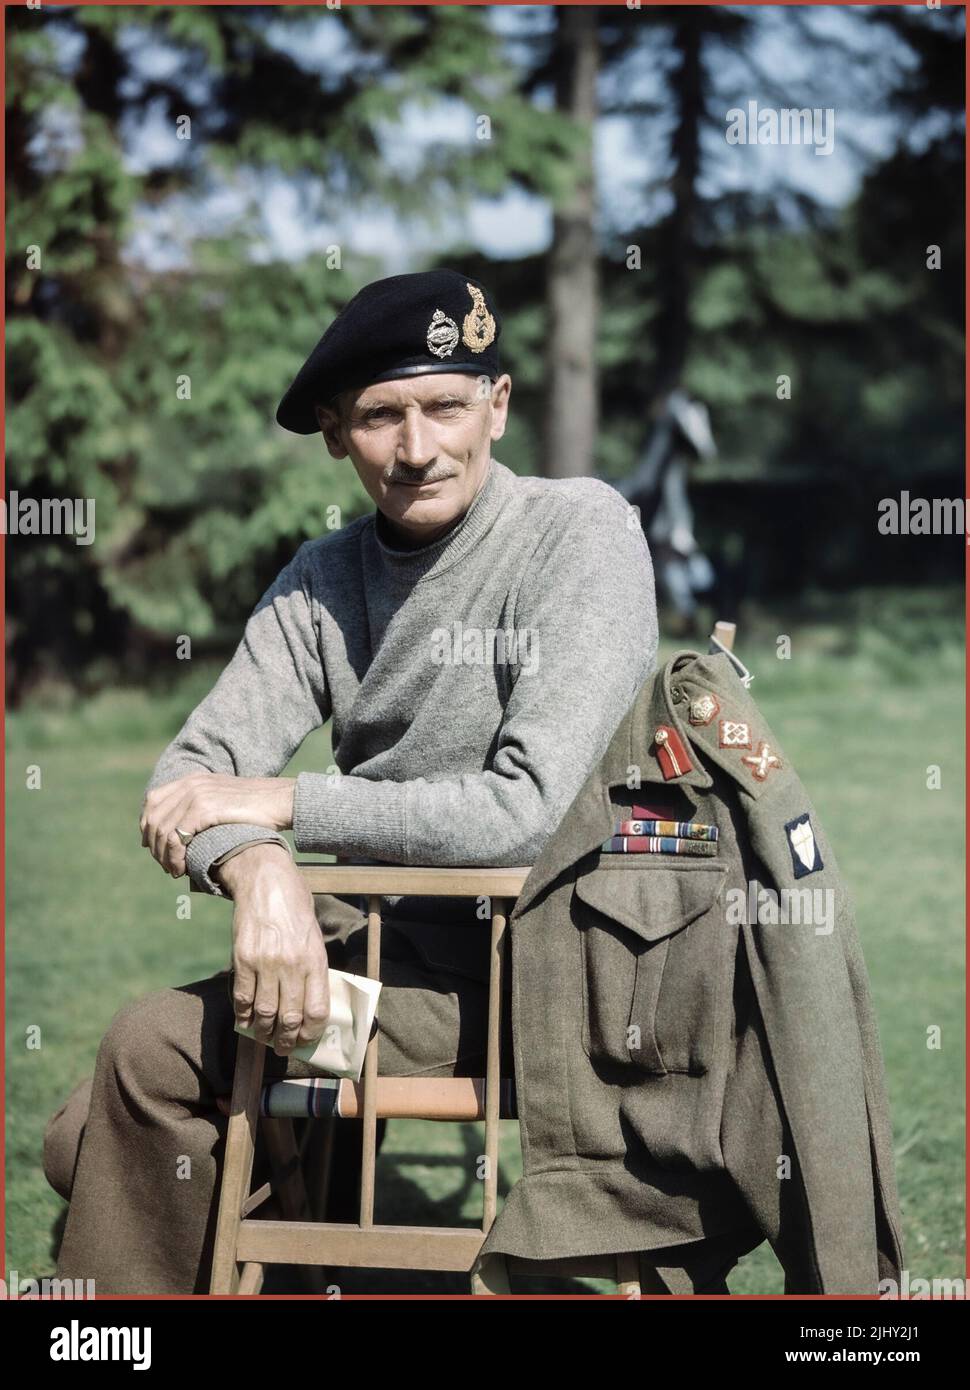 MONTGOMERY PORTRAIT UNIFORM WW2 Portrait des britischen Oberbefehlshabers der 8. Armee, General Sir Bernard Montgomery, mit seinem 'Kampfpullover' und Panzerberette, in Großbritannien, 1943. Zweiter Weltkrieg Stockfoto